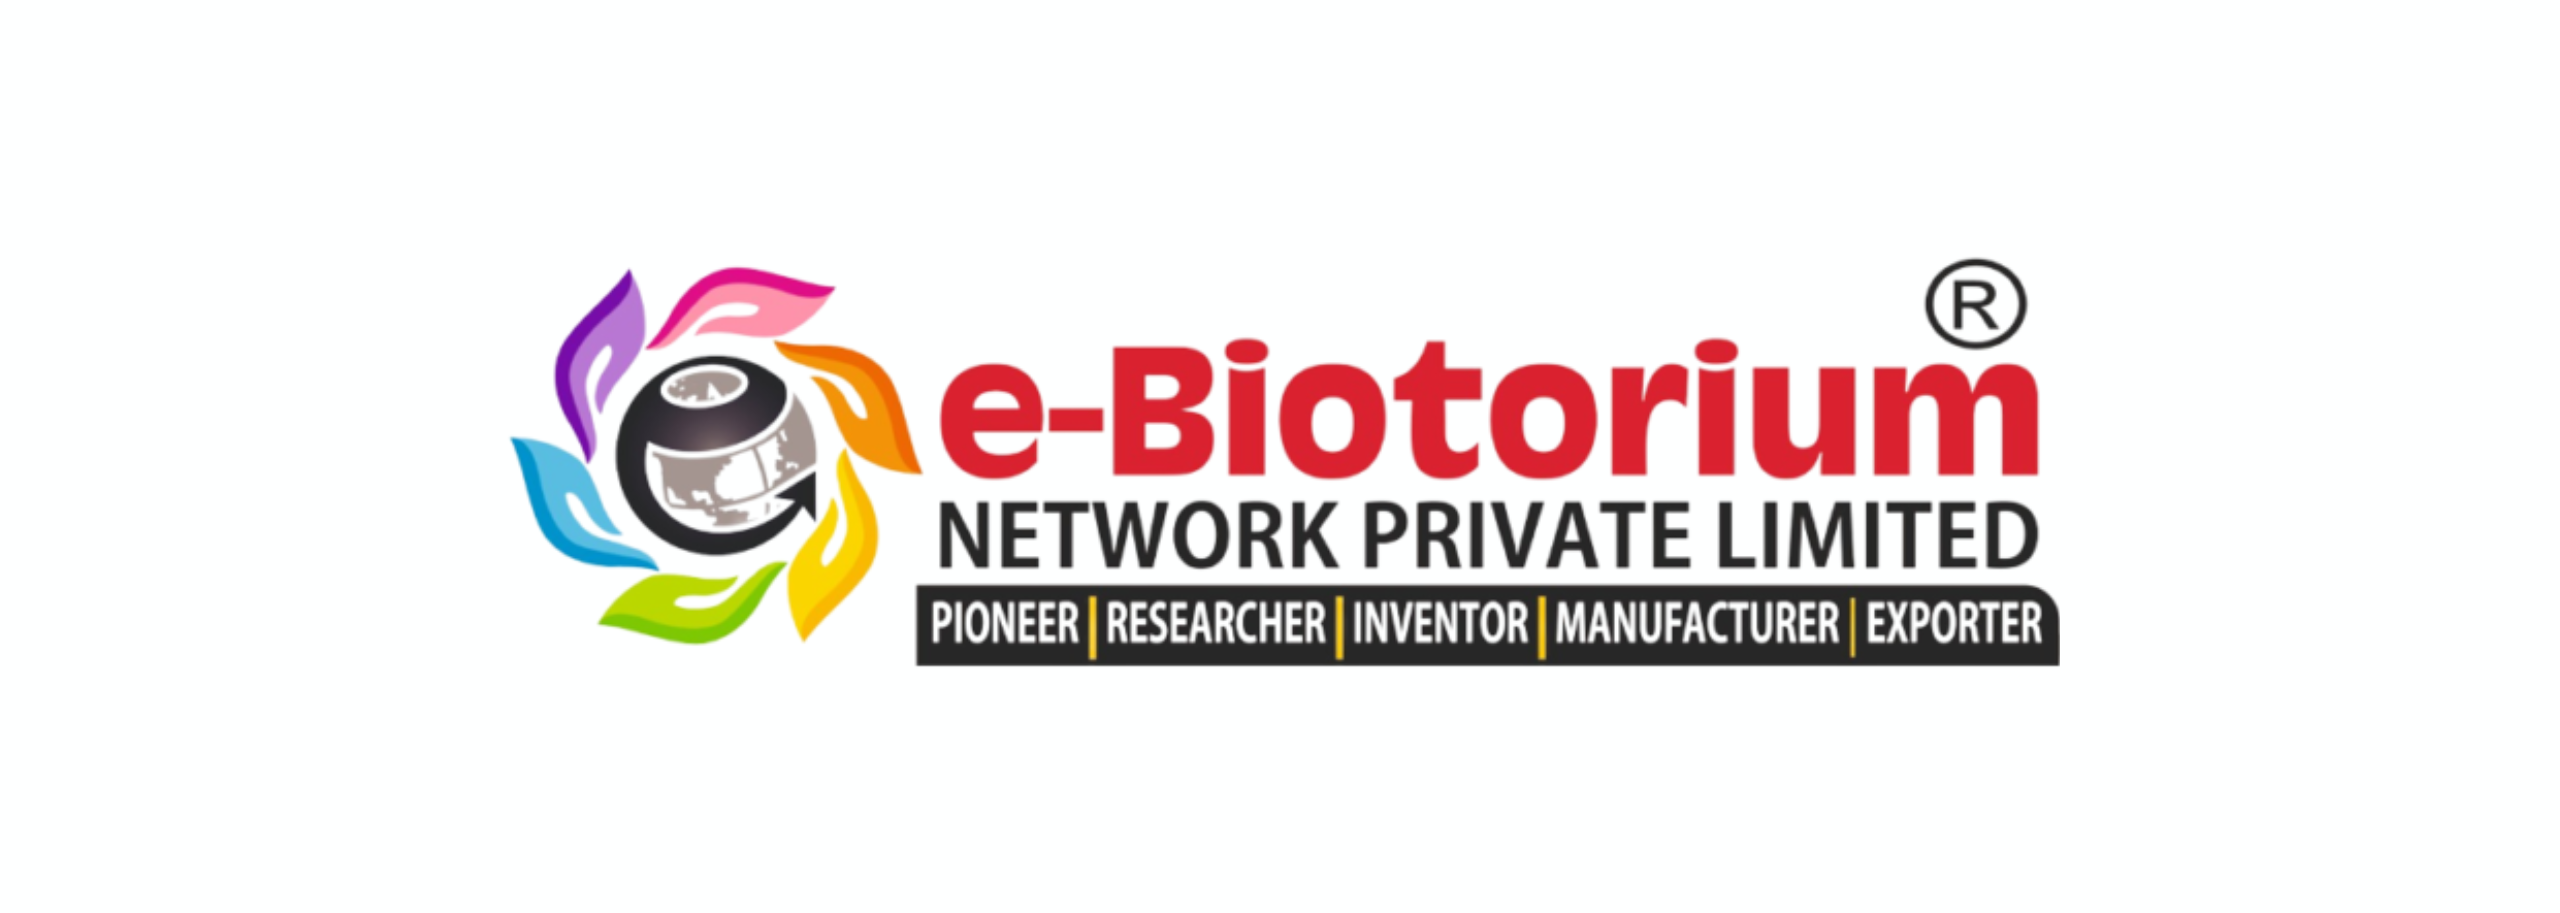 E-Biotorium Network Private Limited